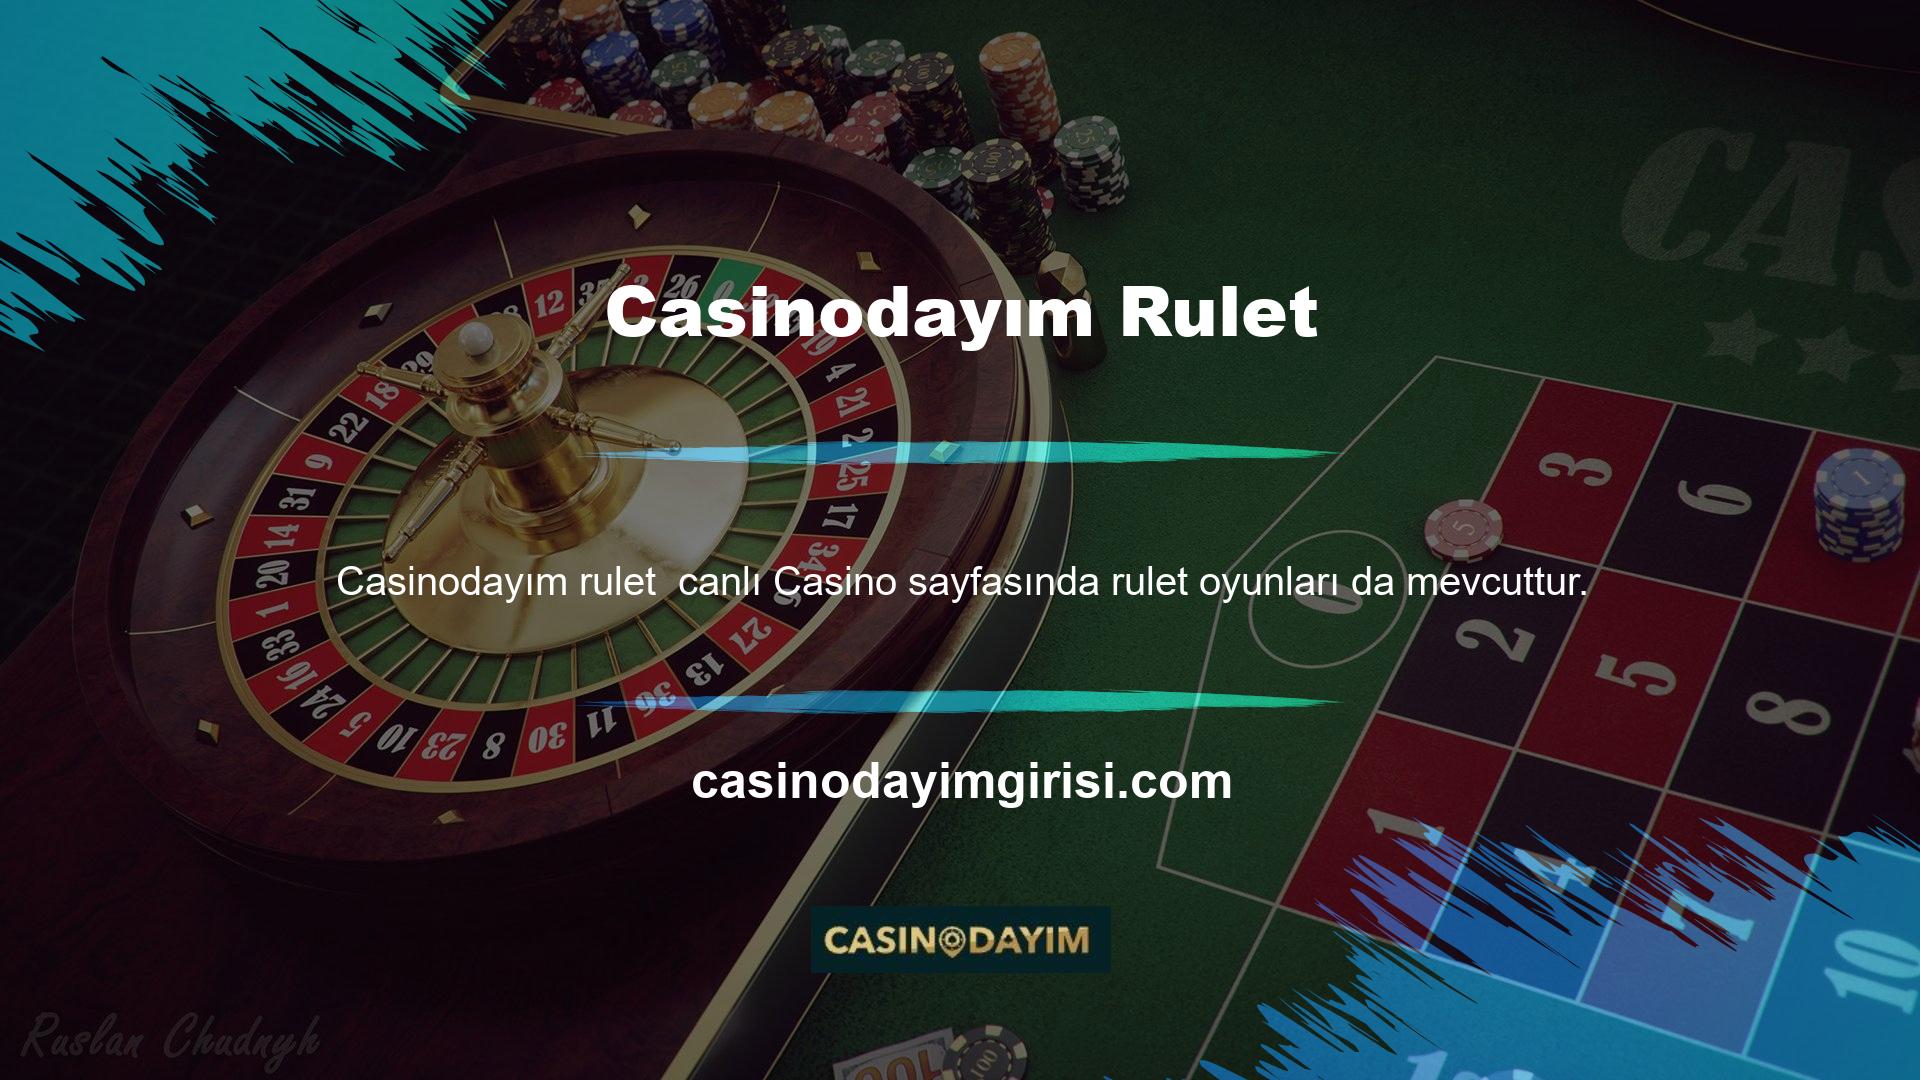 Casinodayım canlı casinosu rulet, basit bir şans oyunu olması nedeniyle kullanıcılar arasında favoridir